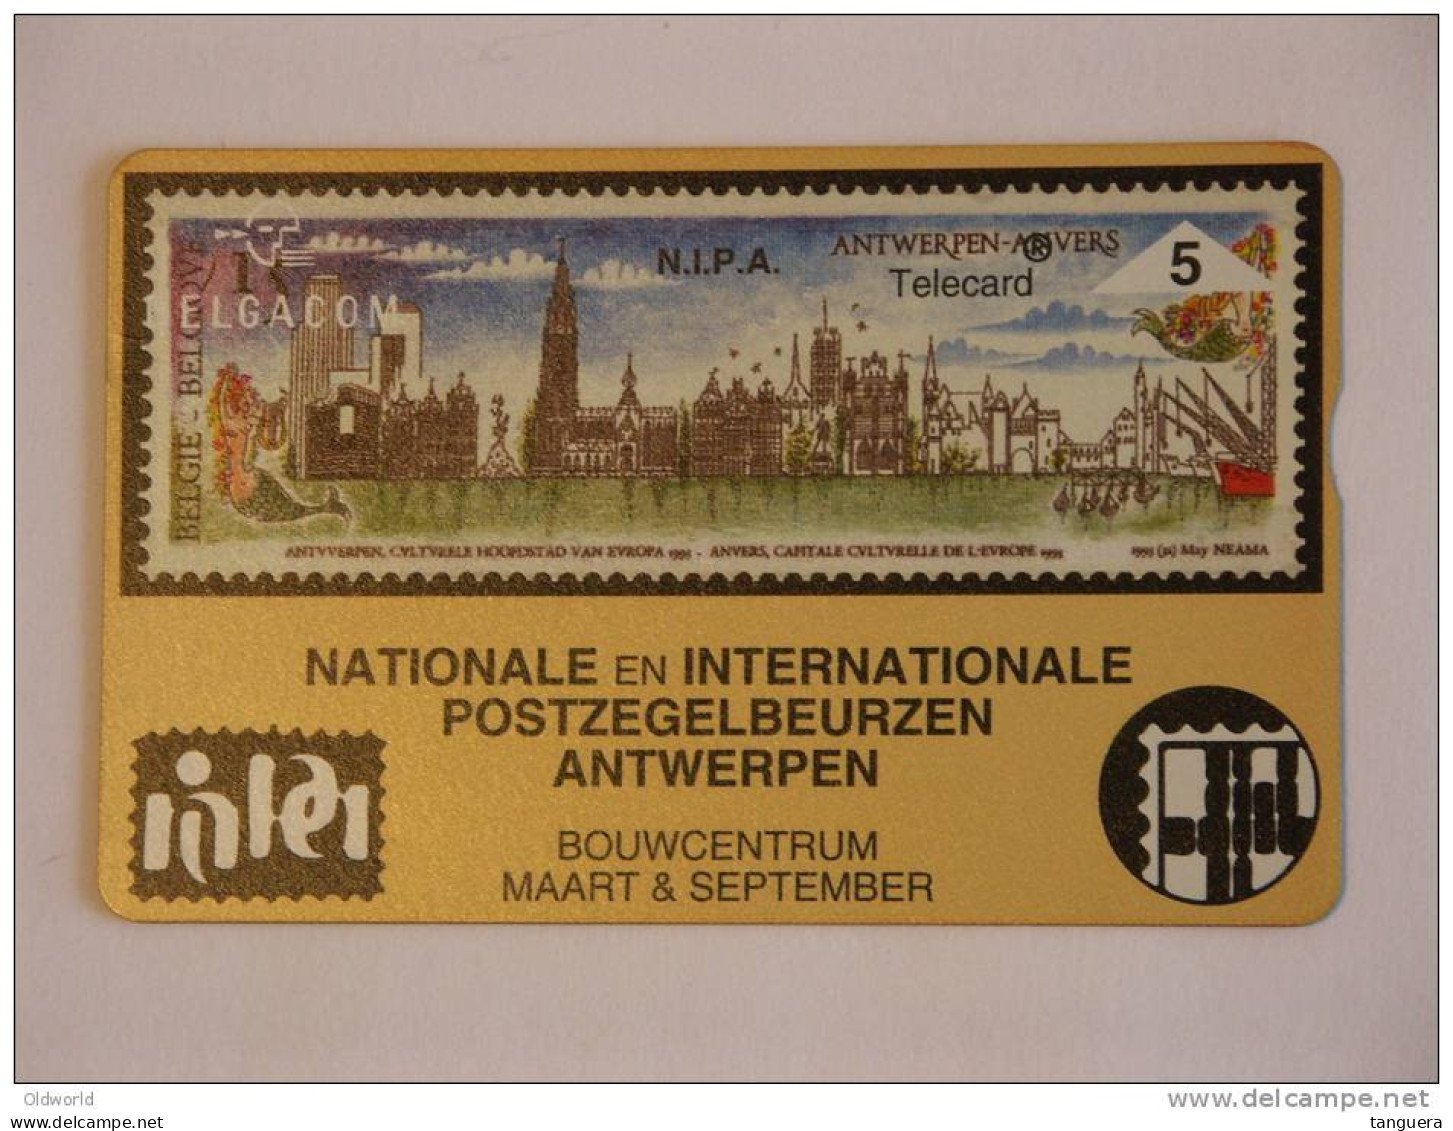 Telefoonkaart Telecard Belgacom Belgique België Privee N.I.P.A Beurs Bourse Timbre Postzegels Mint - Zonder Chip